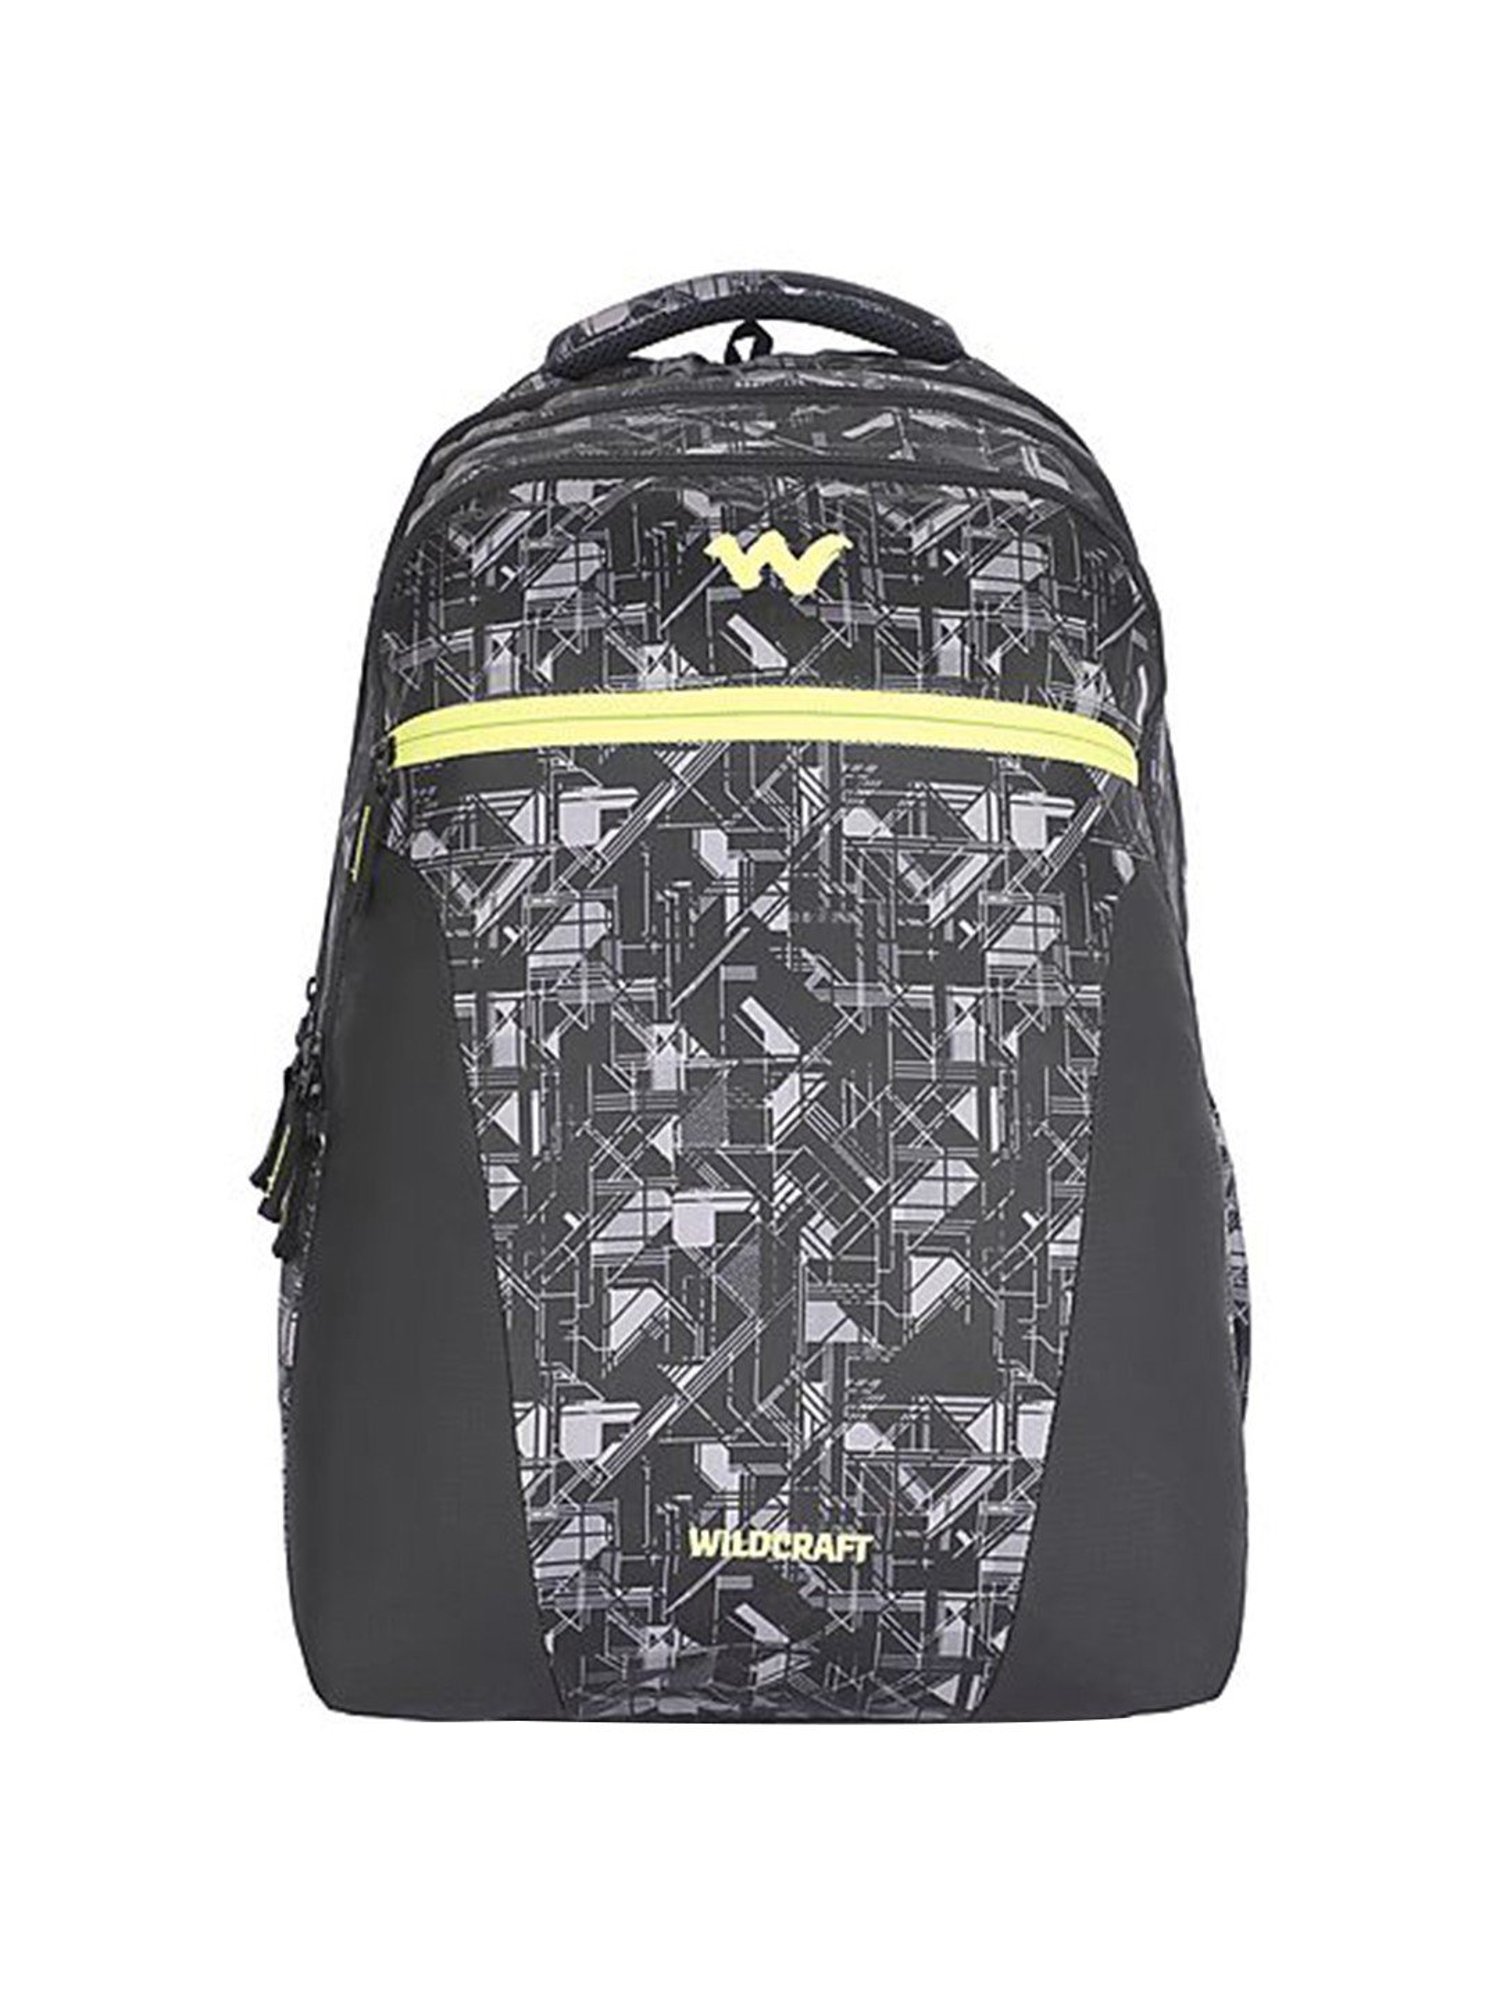 Wildcraft College Bag